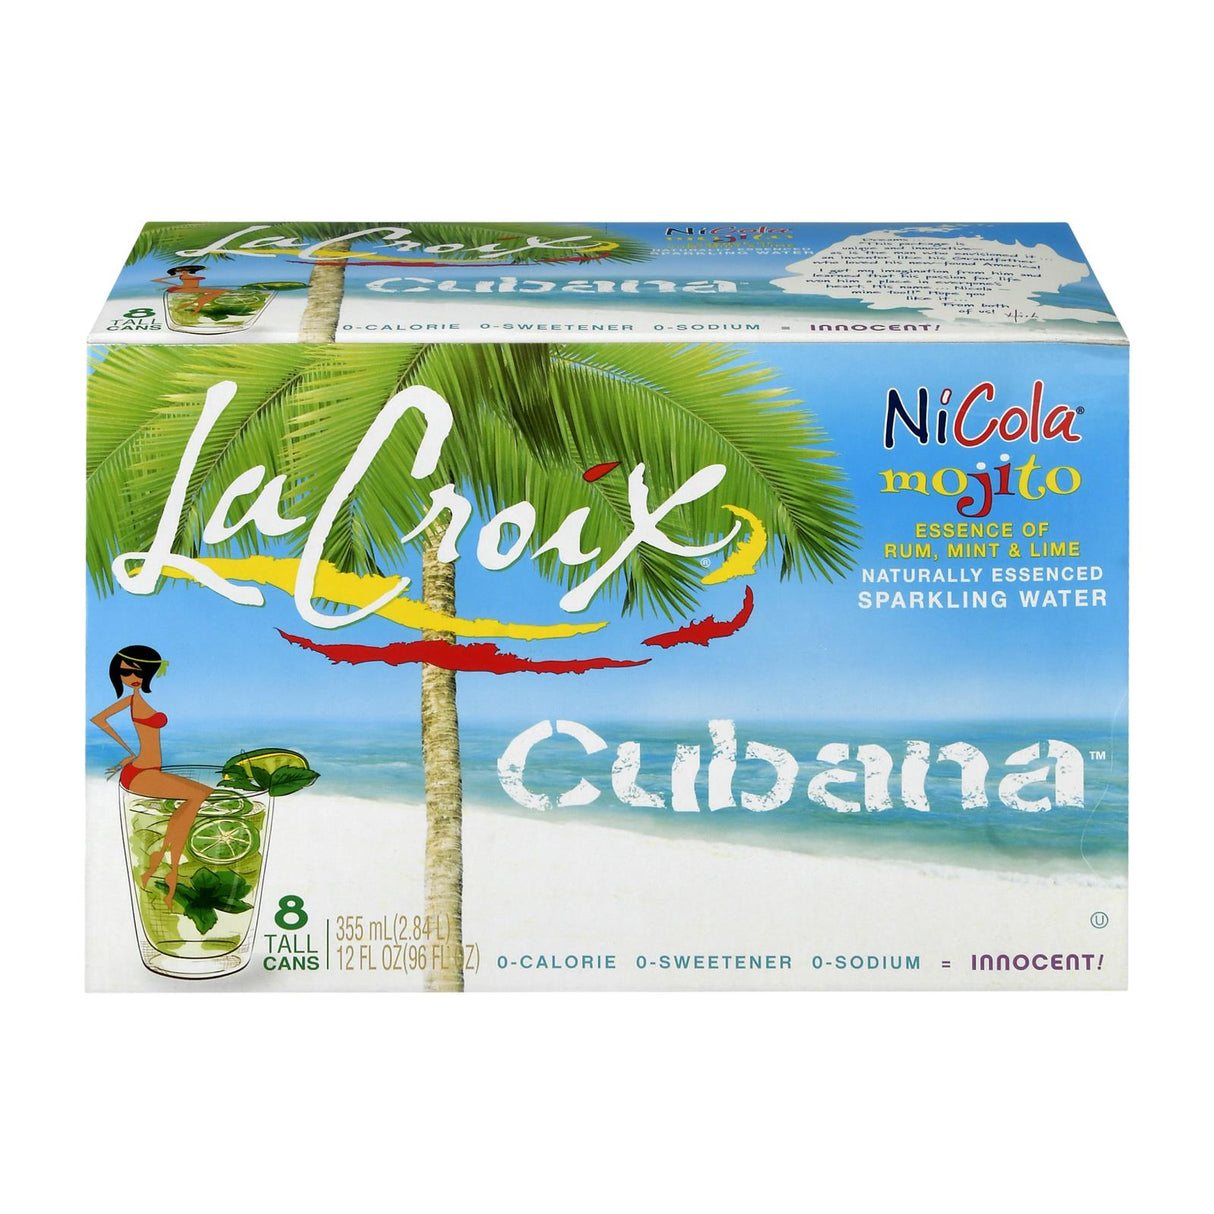 Lacroix Sparkling Water, Nicola Cubana Flavor, Case of 3, 8 x 12 Fl. Oz. Cans - Cozy Farm 